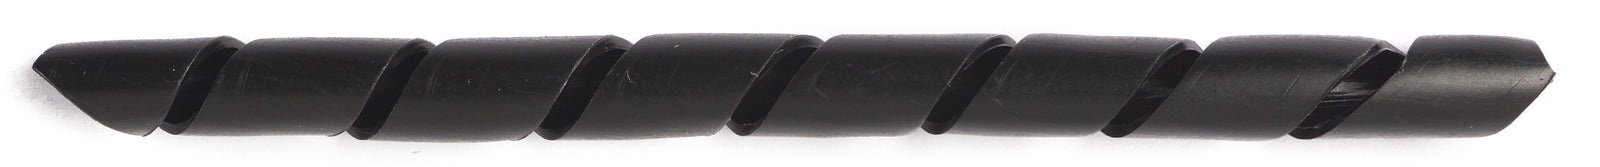 spiral winding hose 4 mm 10 meters black